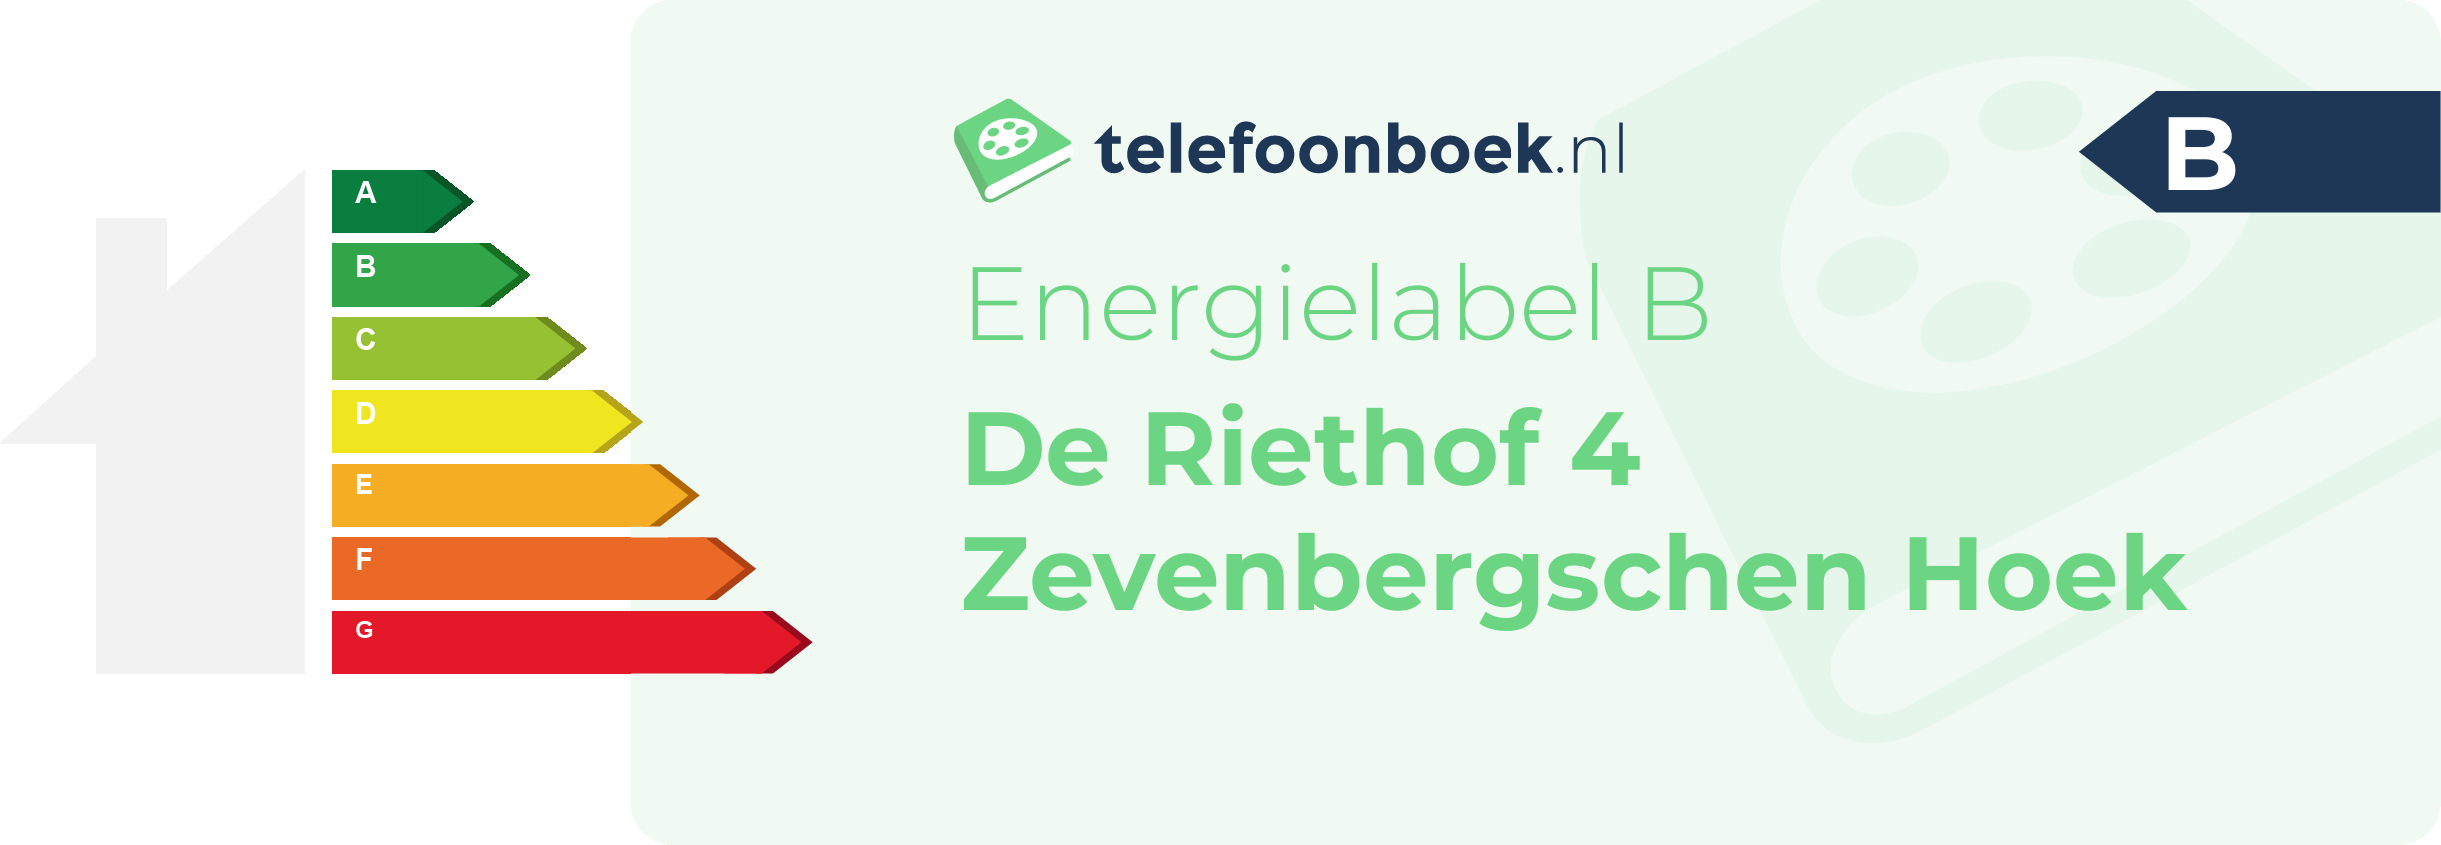 Energielabel De Riethof 4 Zevenbergschen Hoek